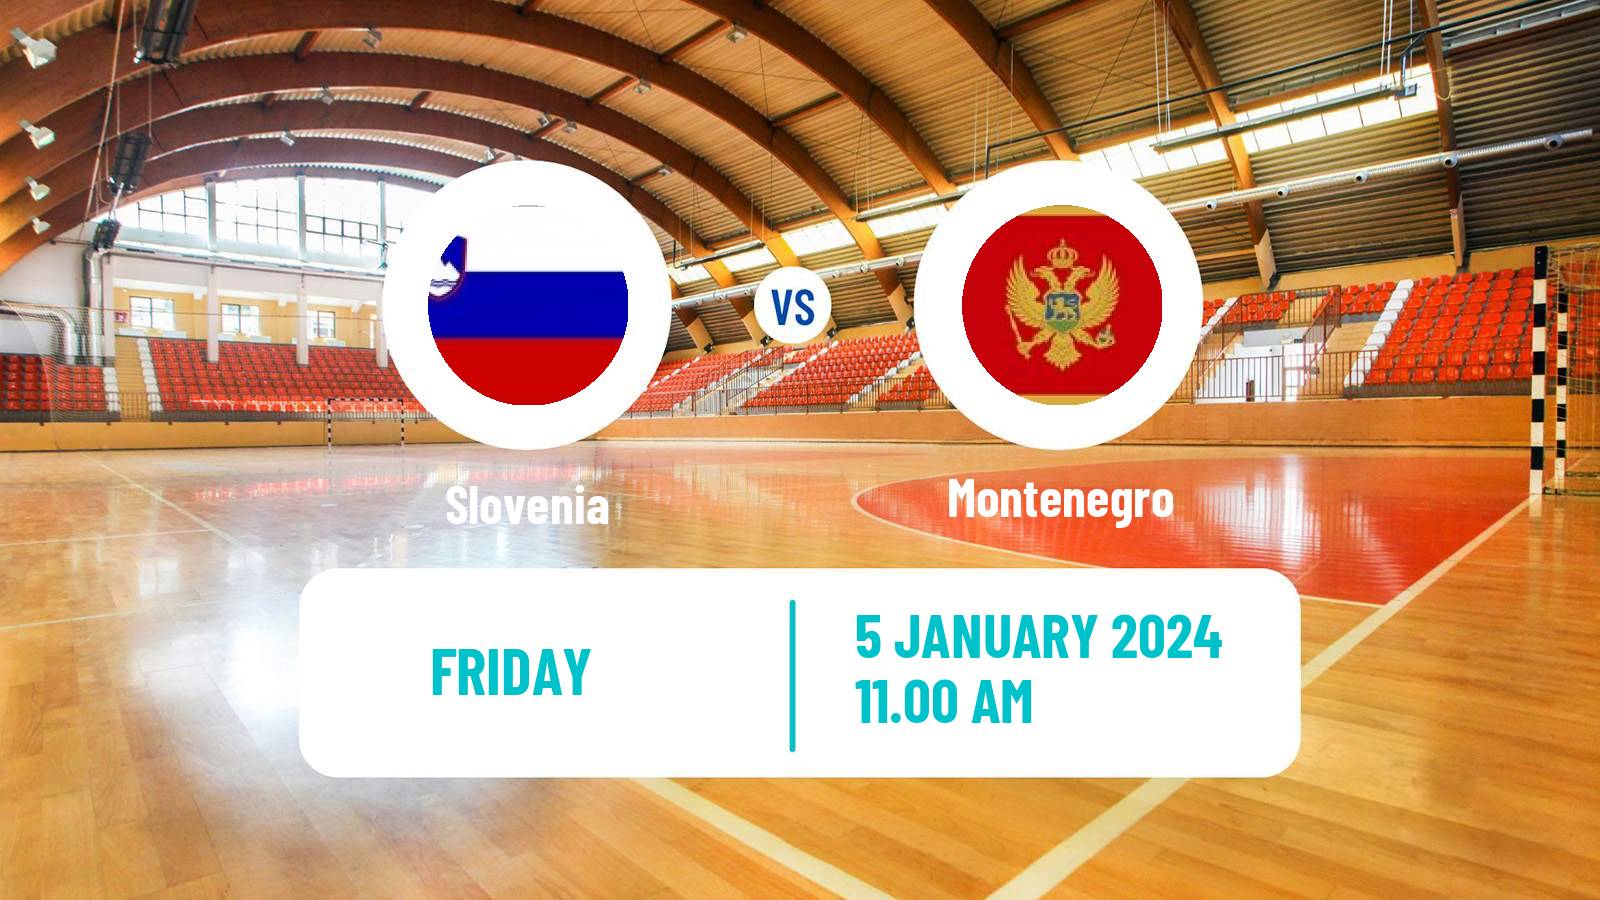 Handball Friendly International Handball Slovenia - Montenegro